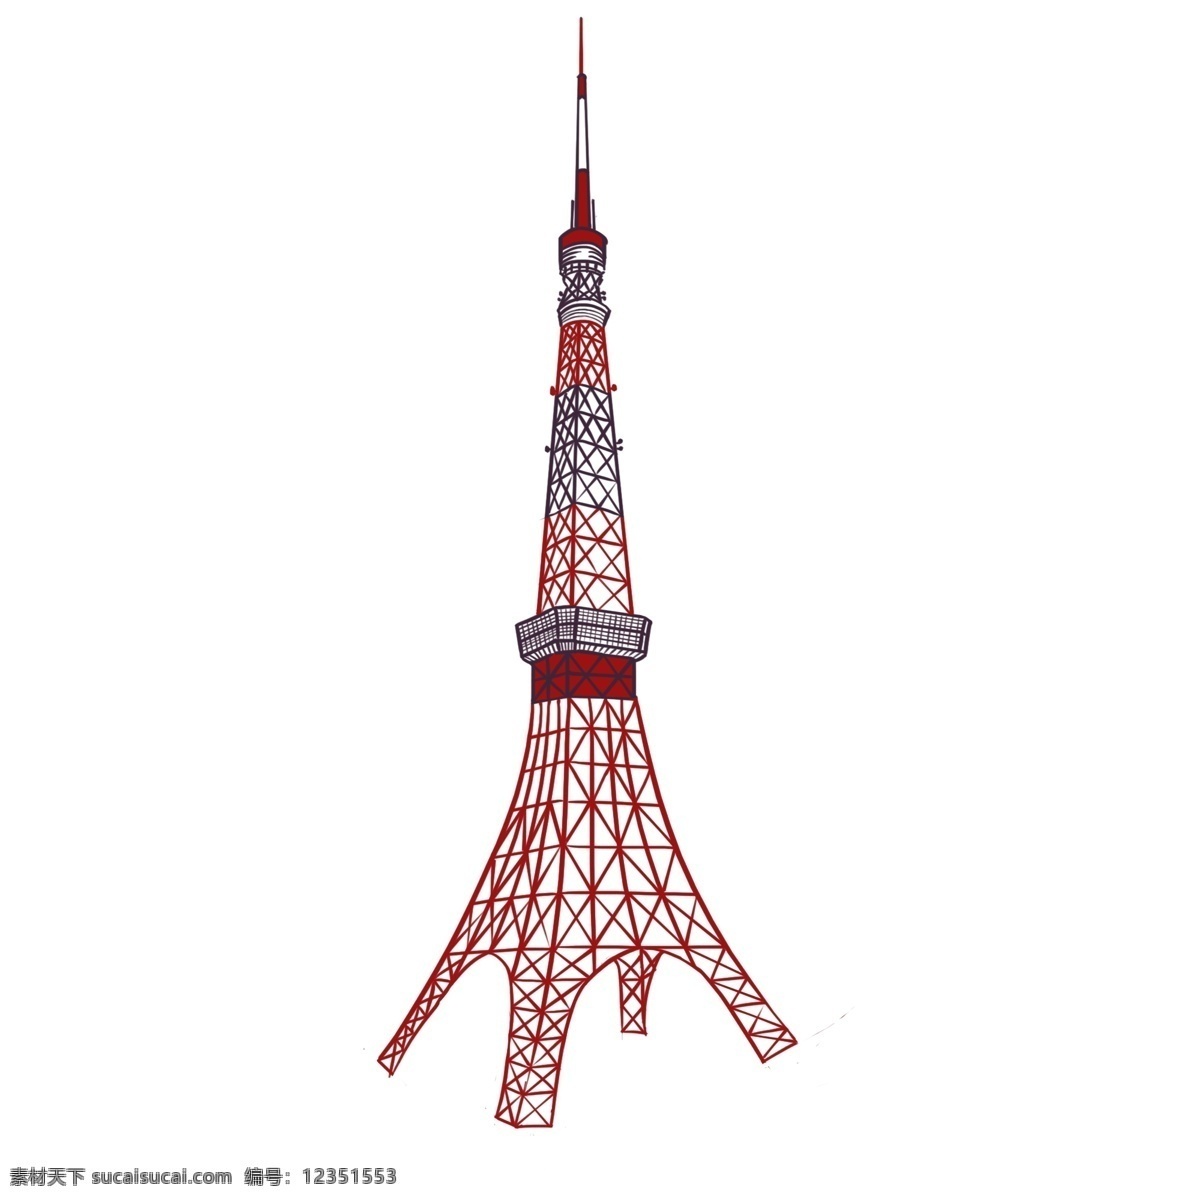 红色 日本 东京 塔 建筑 漂亮 手绘 卡通 宏伟 插画